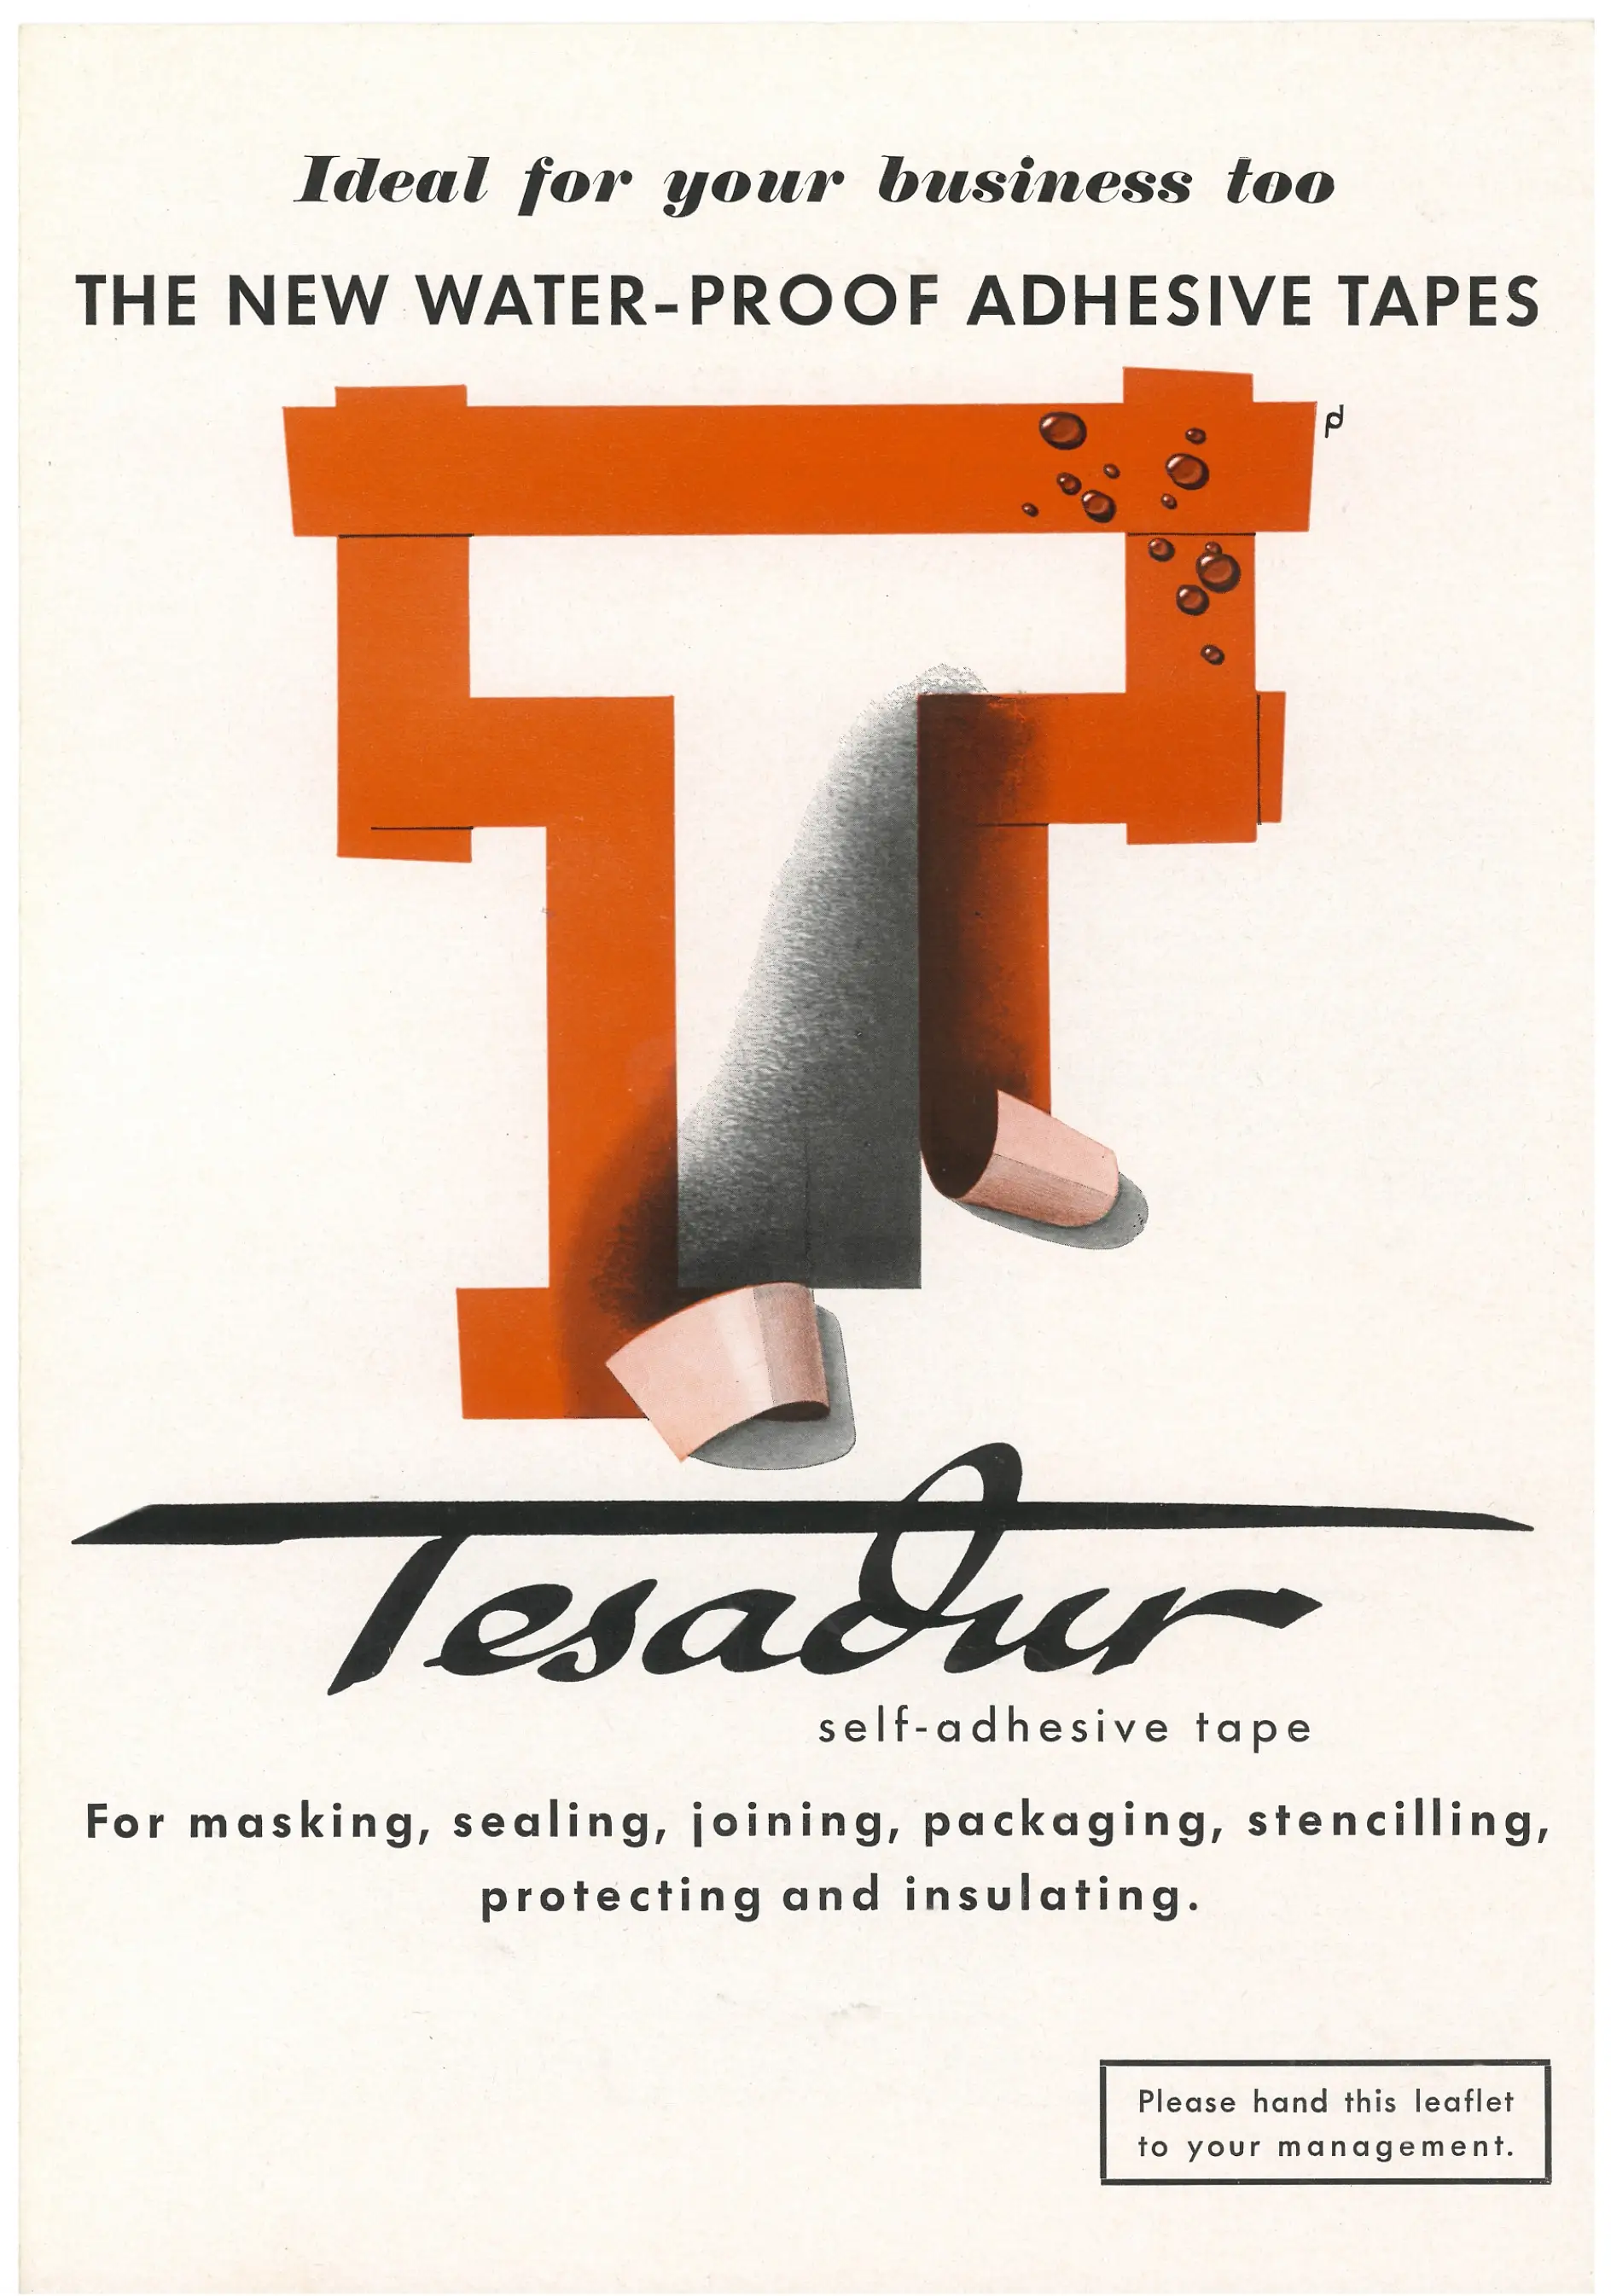 Так tesa рекламувала свою водонепроникну стрічку Tesadur у США у 1953 році.